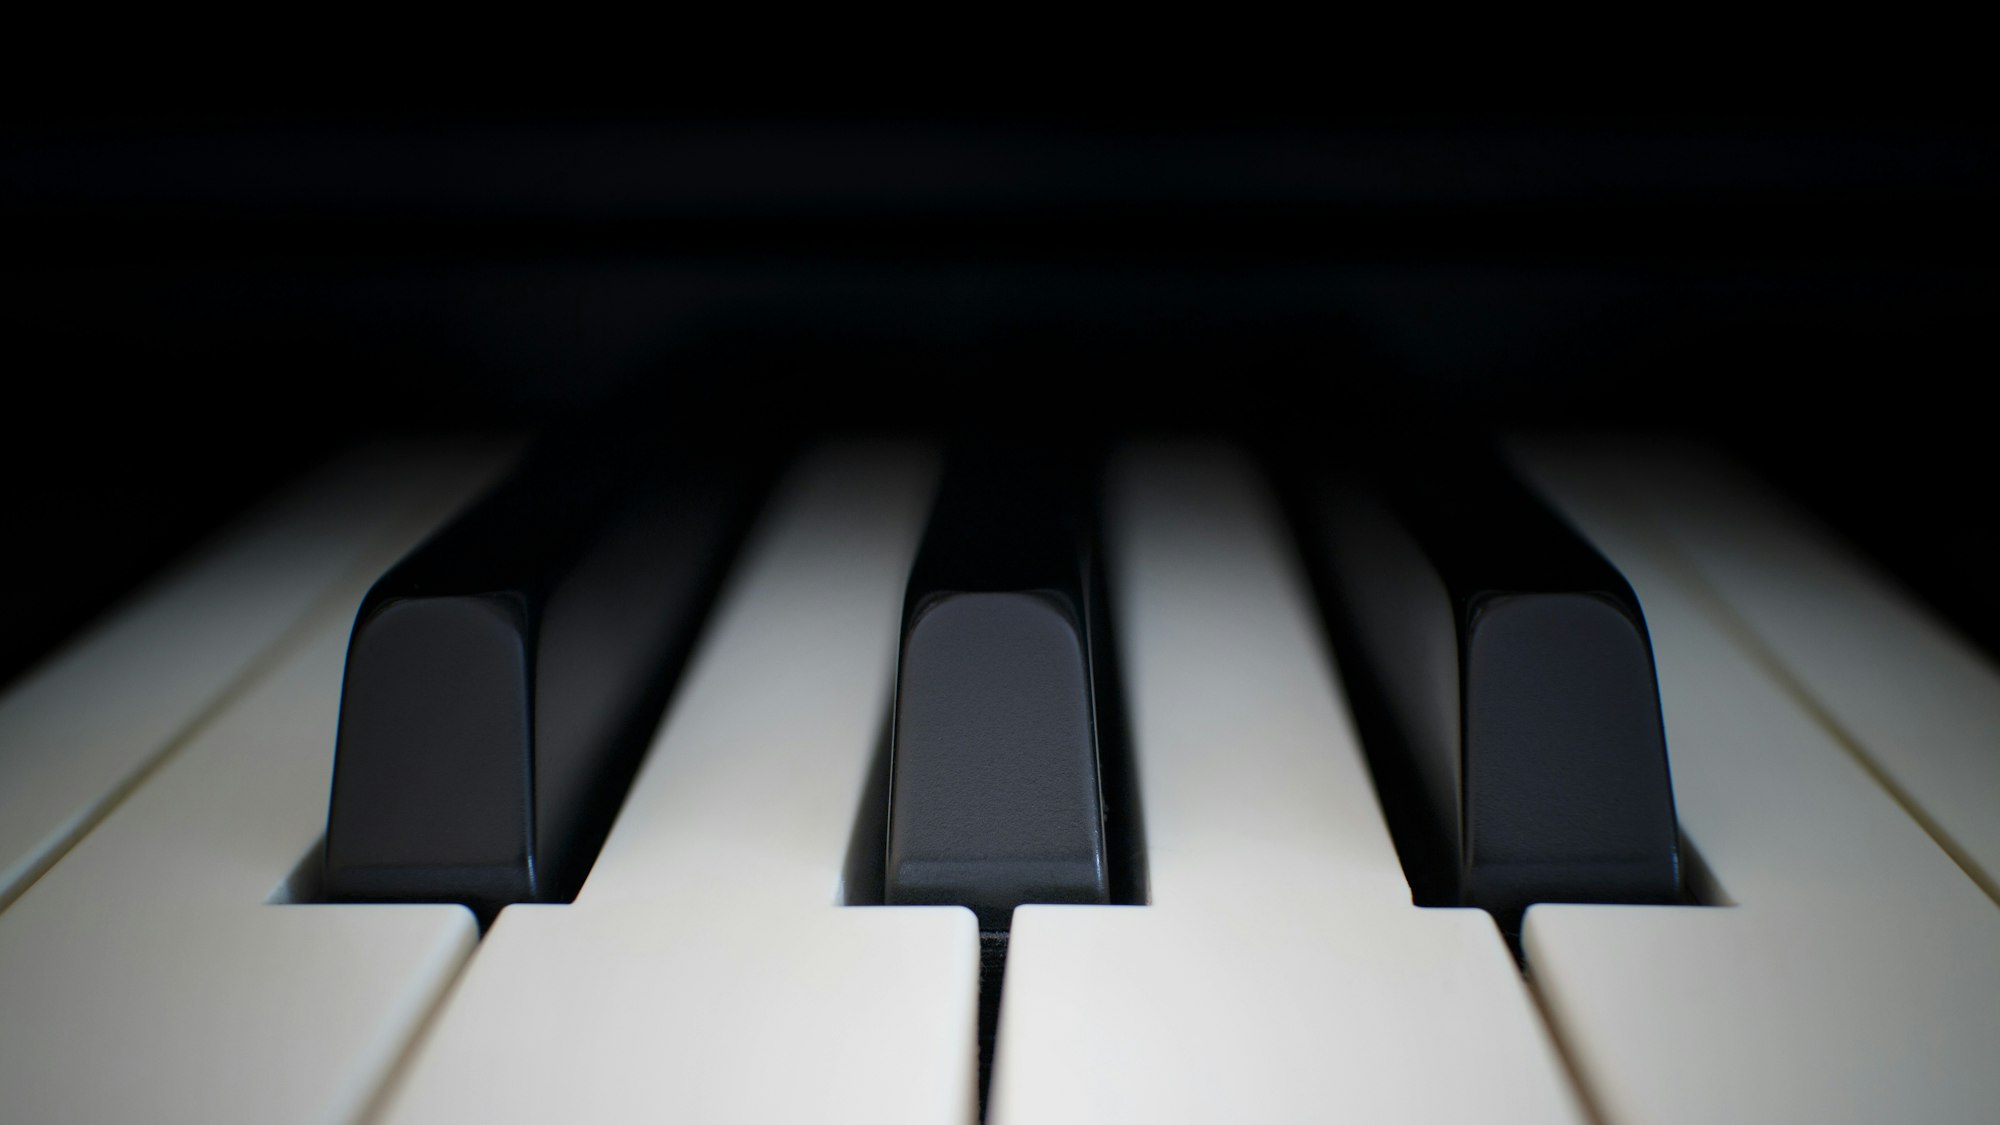 How Many Keys Are On A Piano?